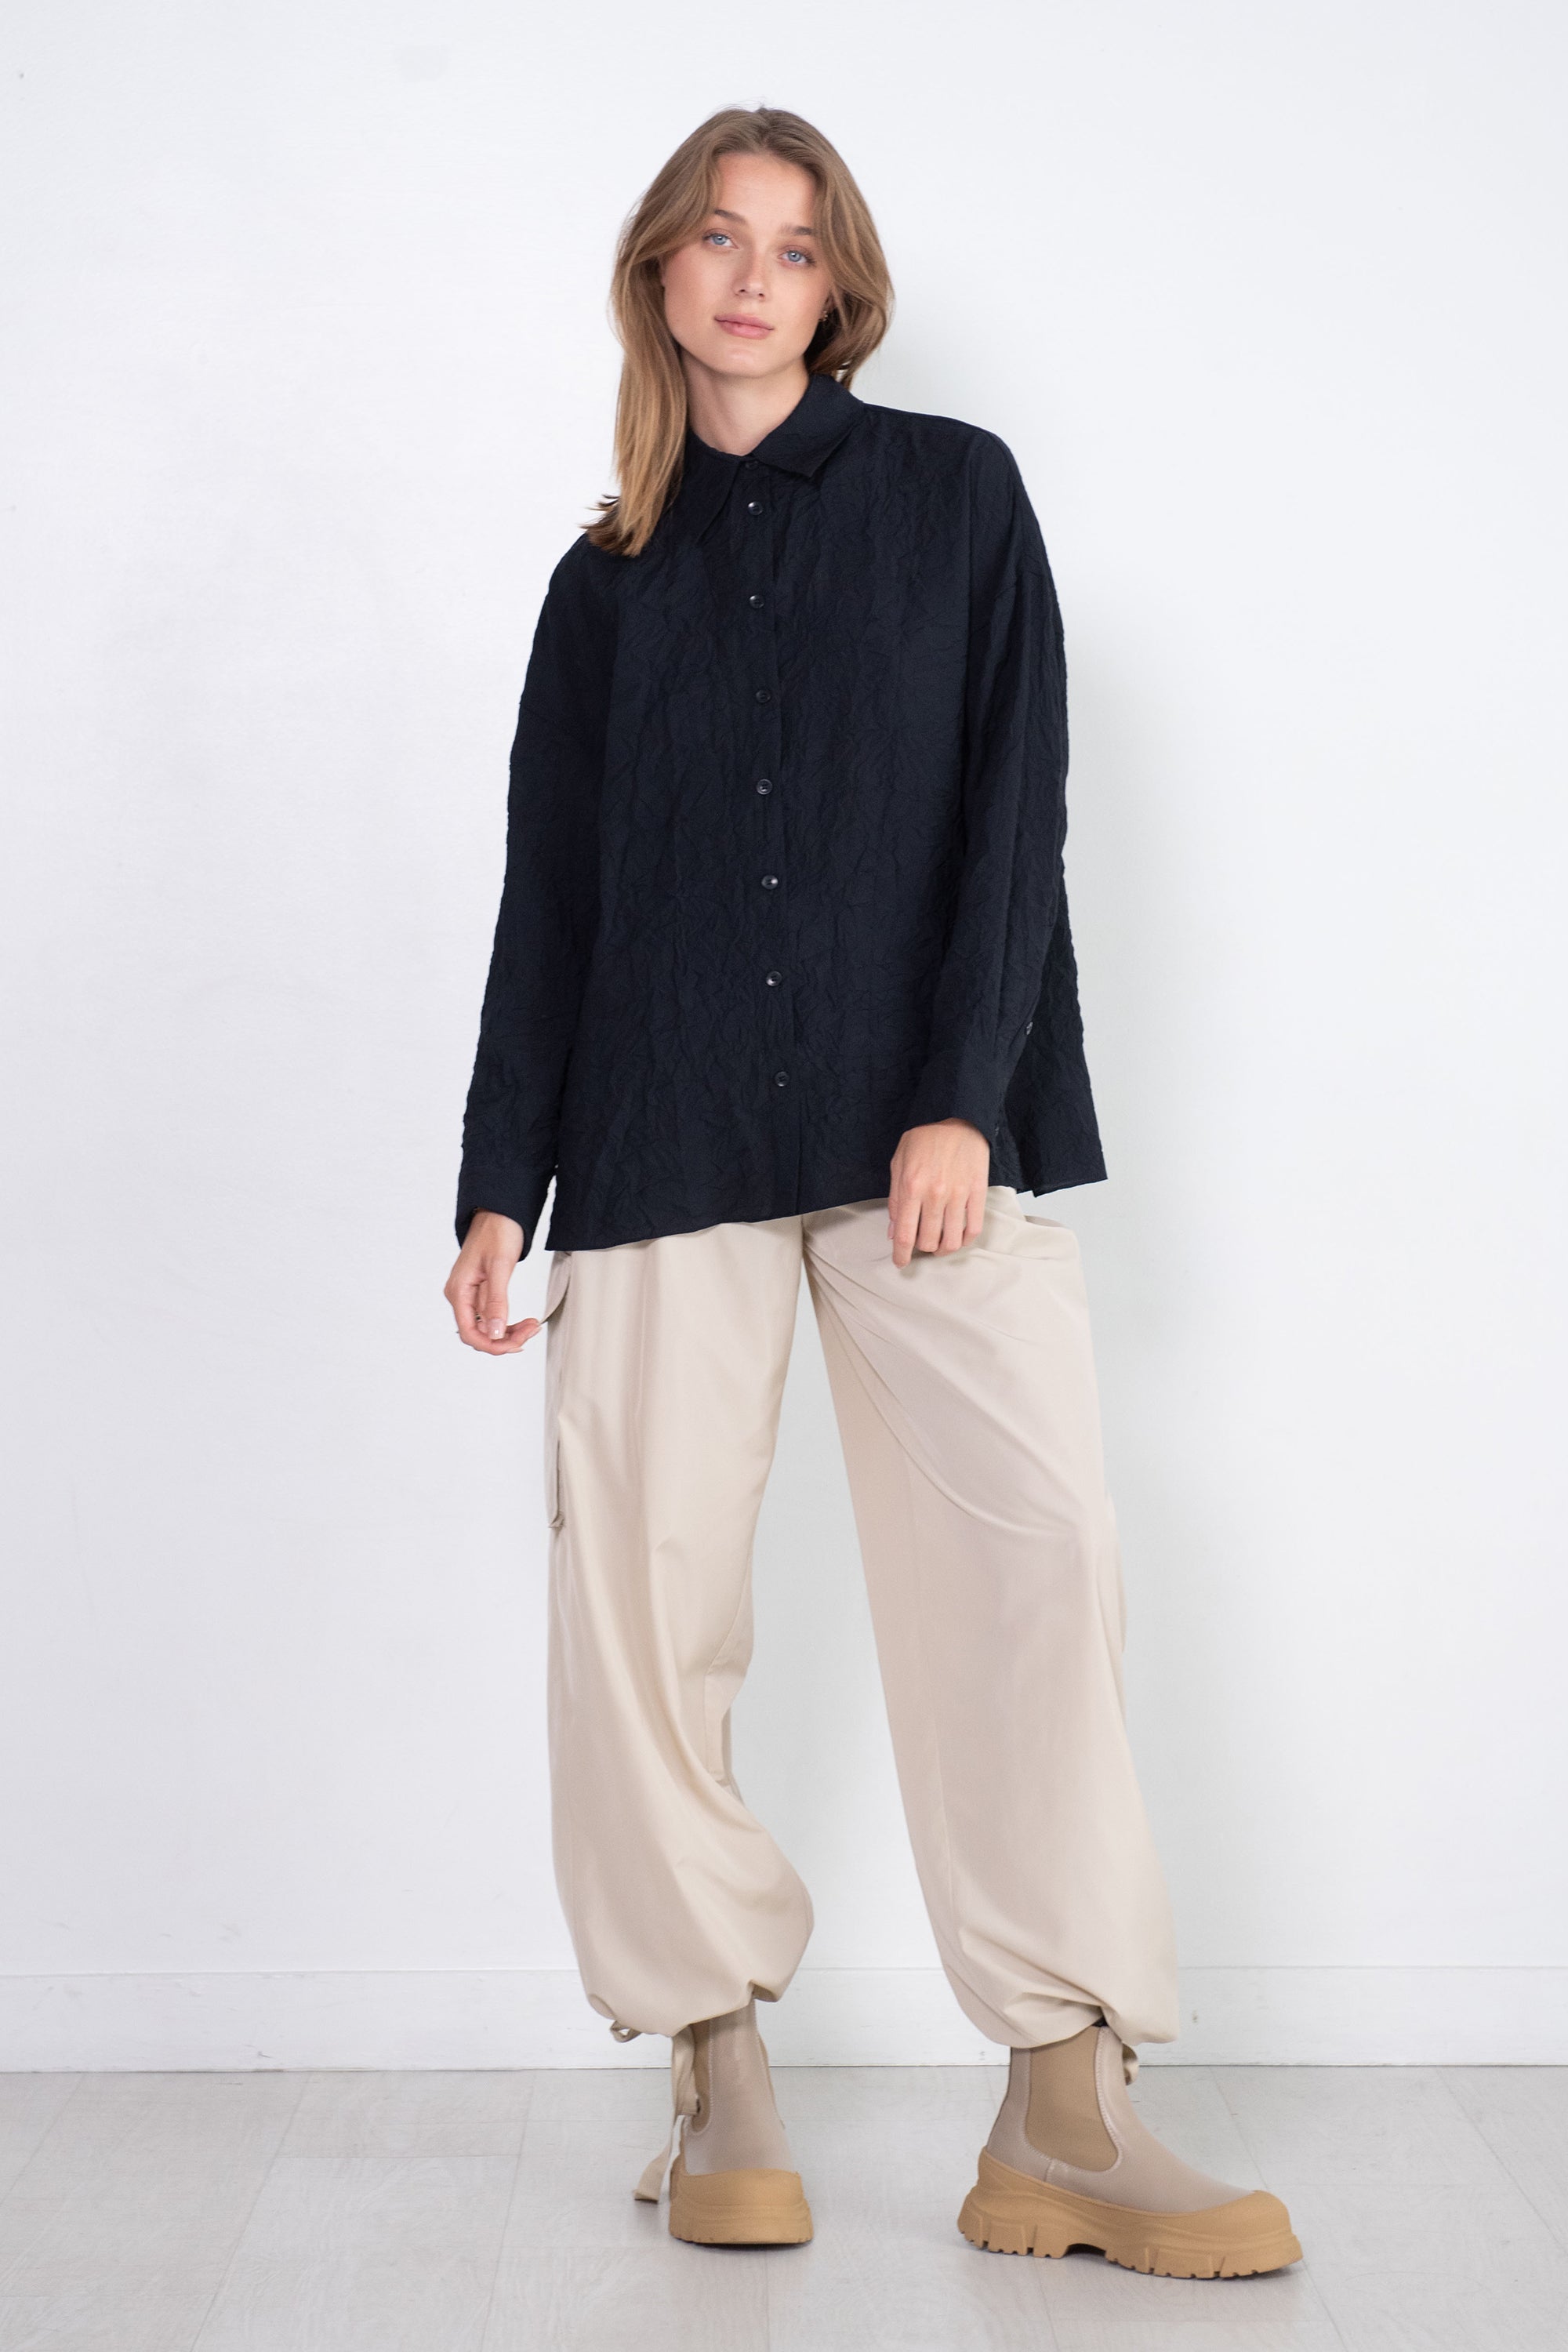 Crinkle Black Oversized Linen Shirt –